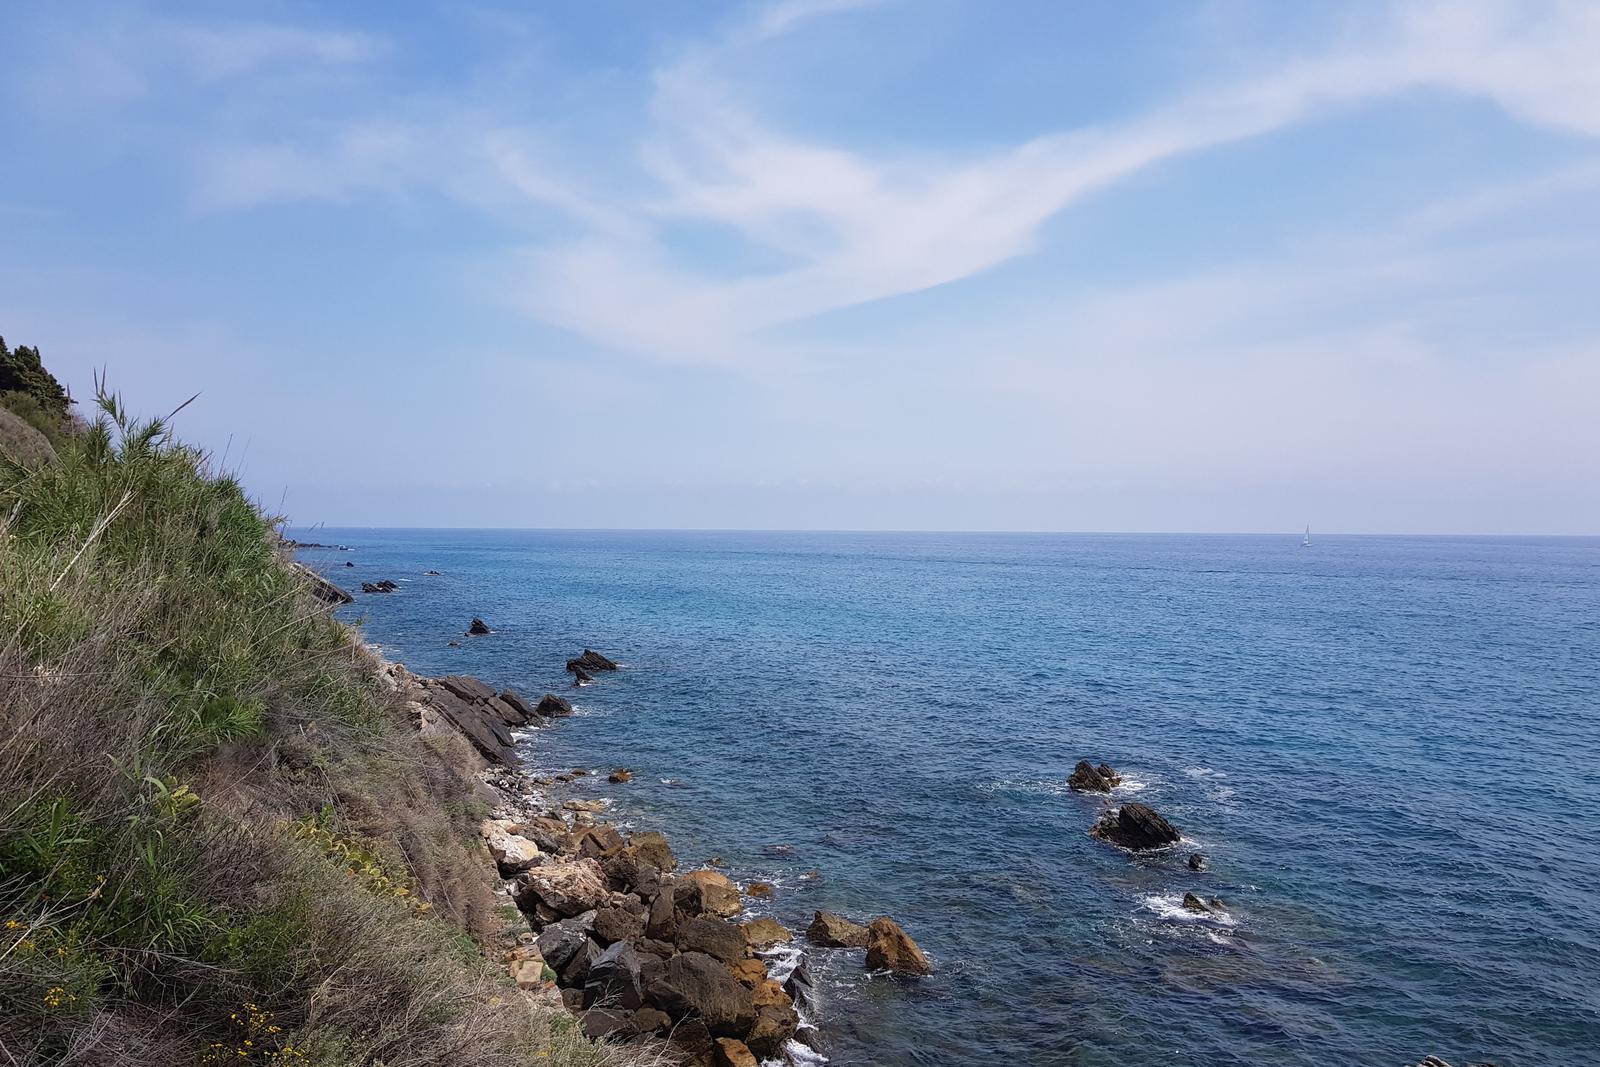 First look at Italian Coast